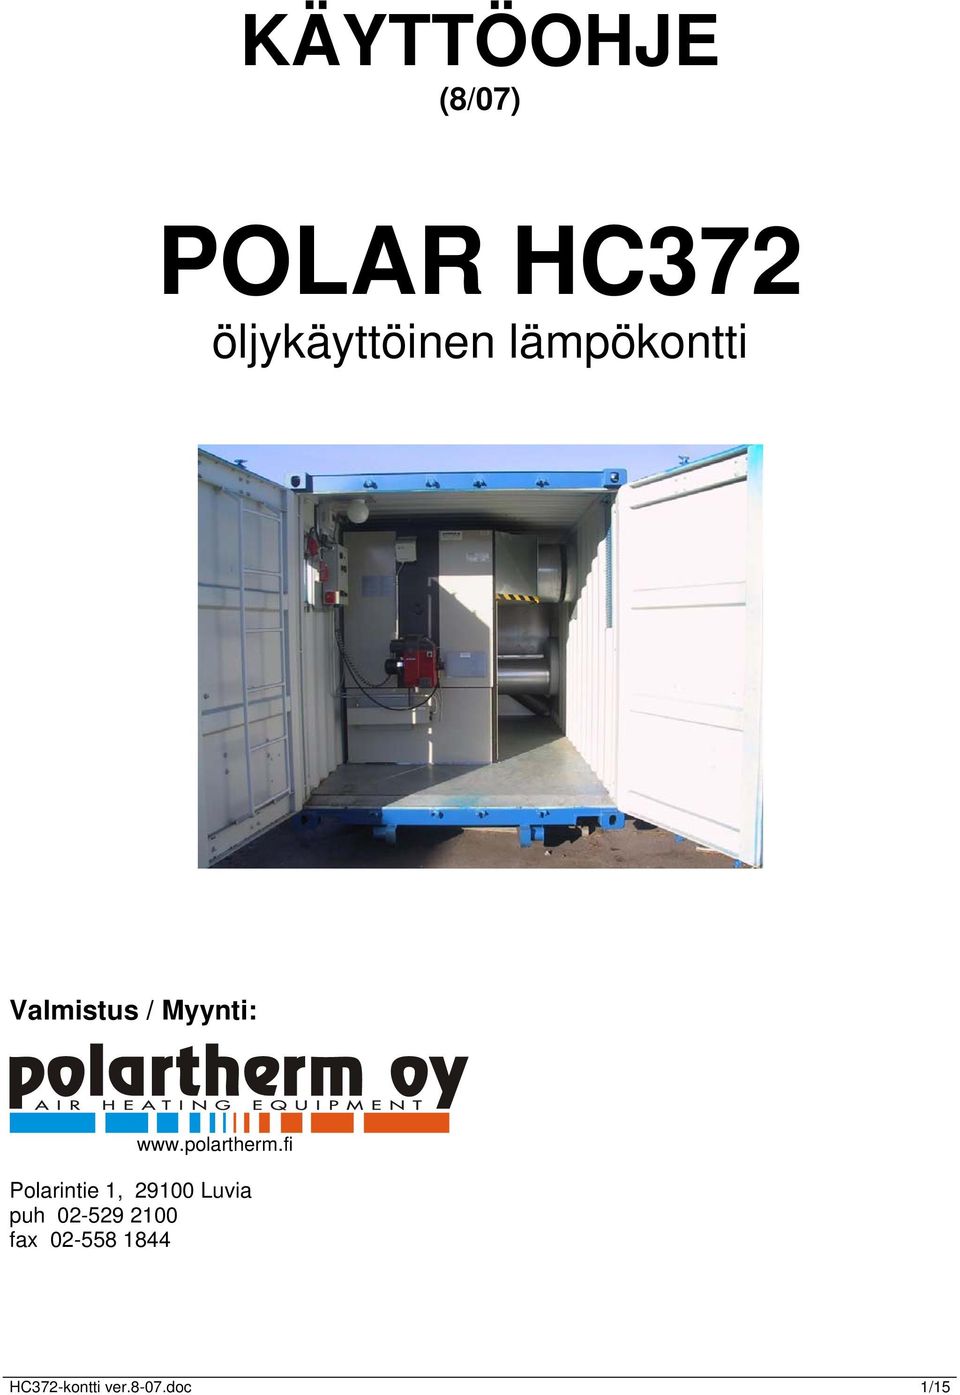 Myynti: www.polartherm.